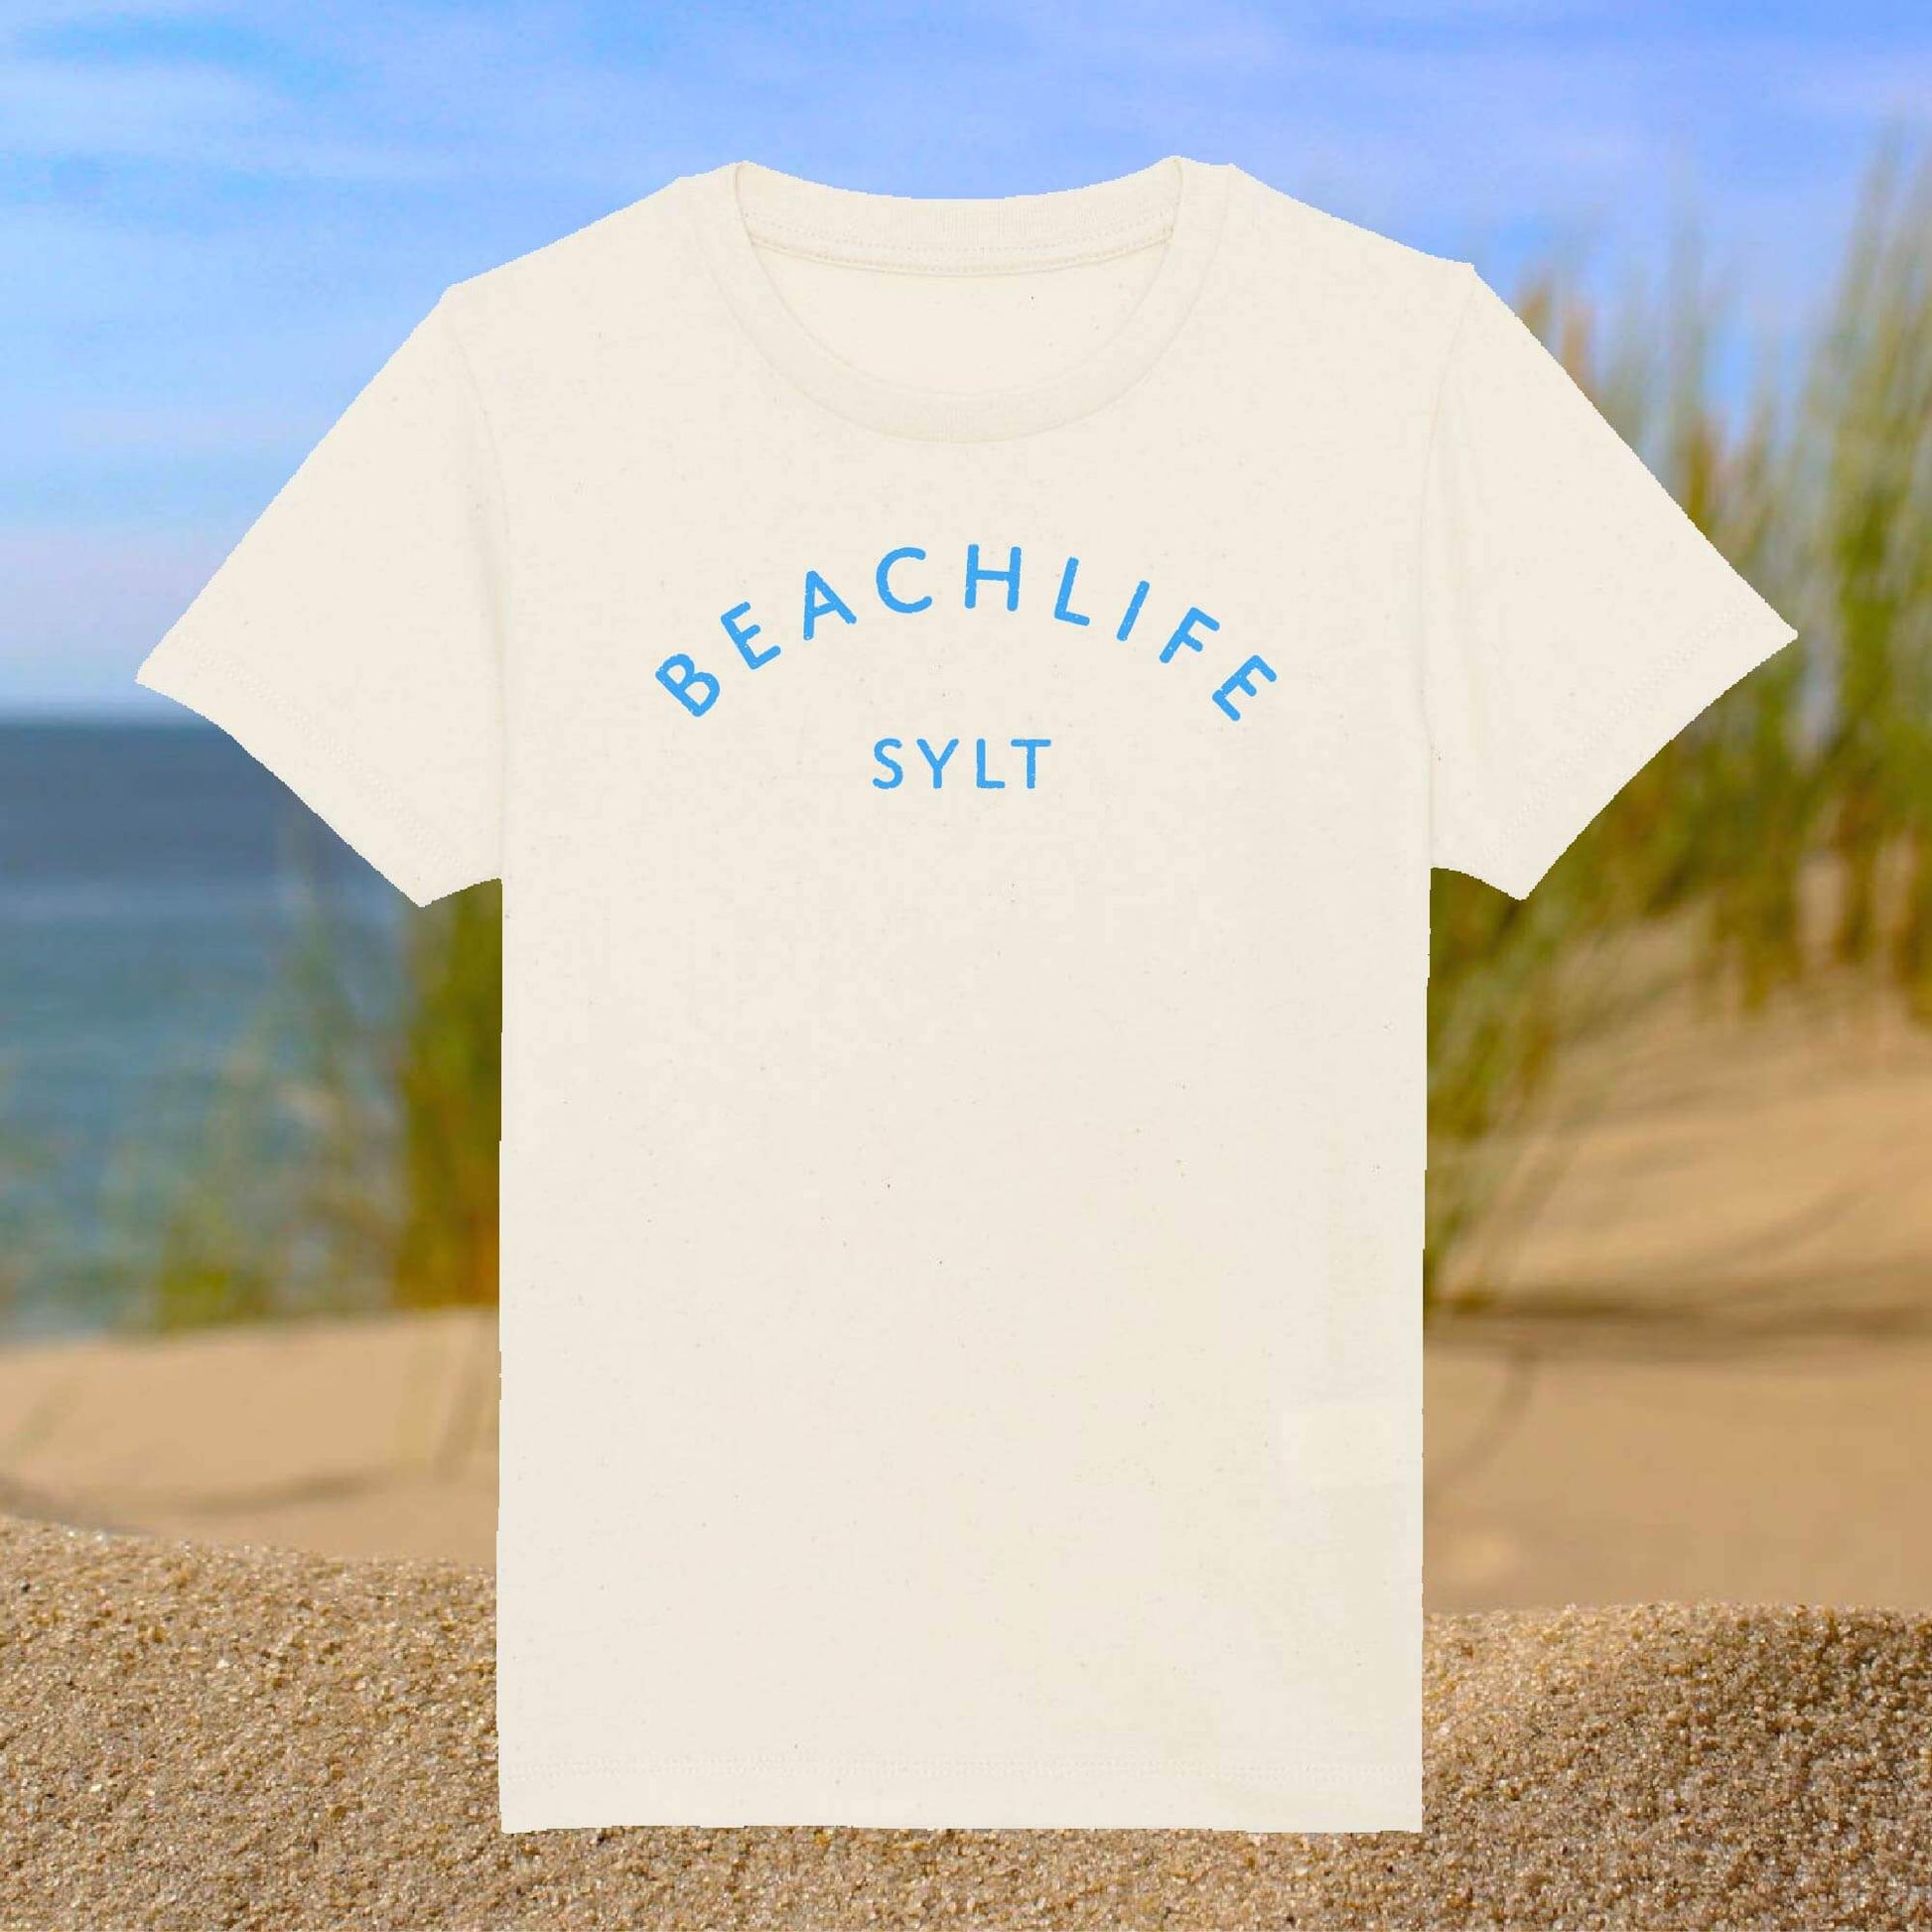 Hellbeiges T-Shirt mit blauem Beachlife Sylt Aufdruck.